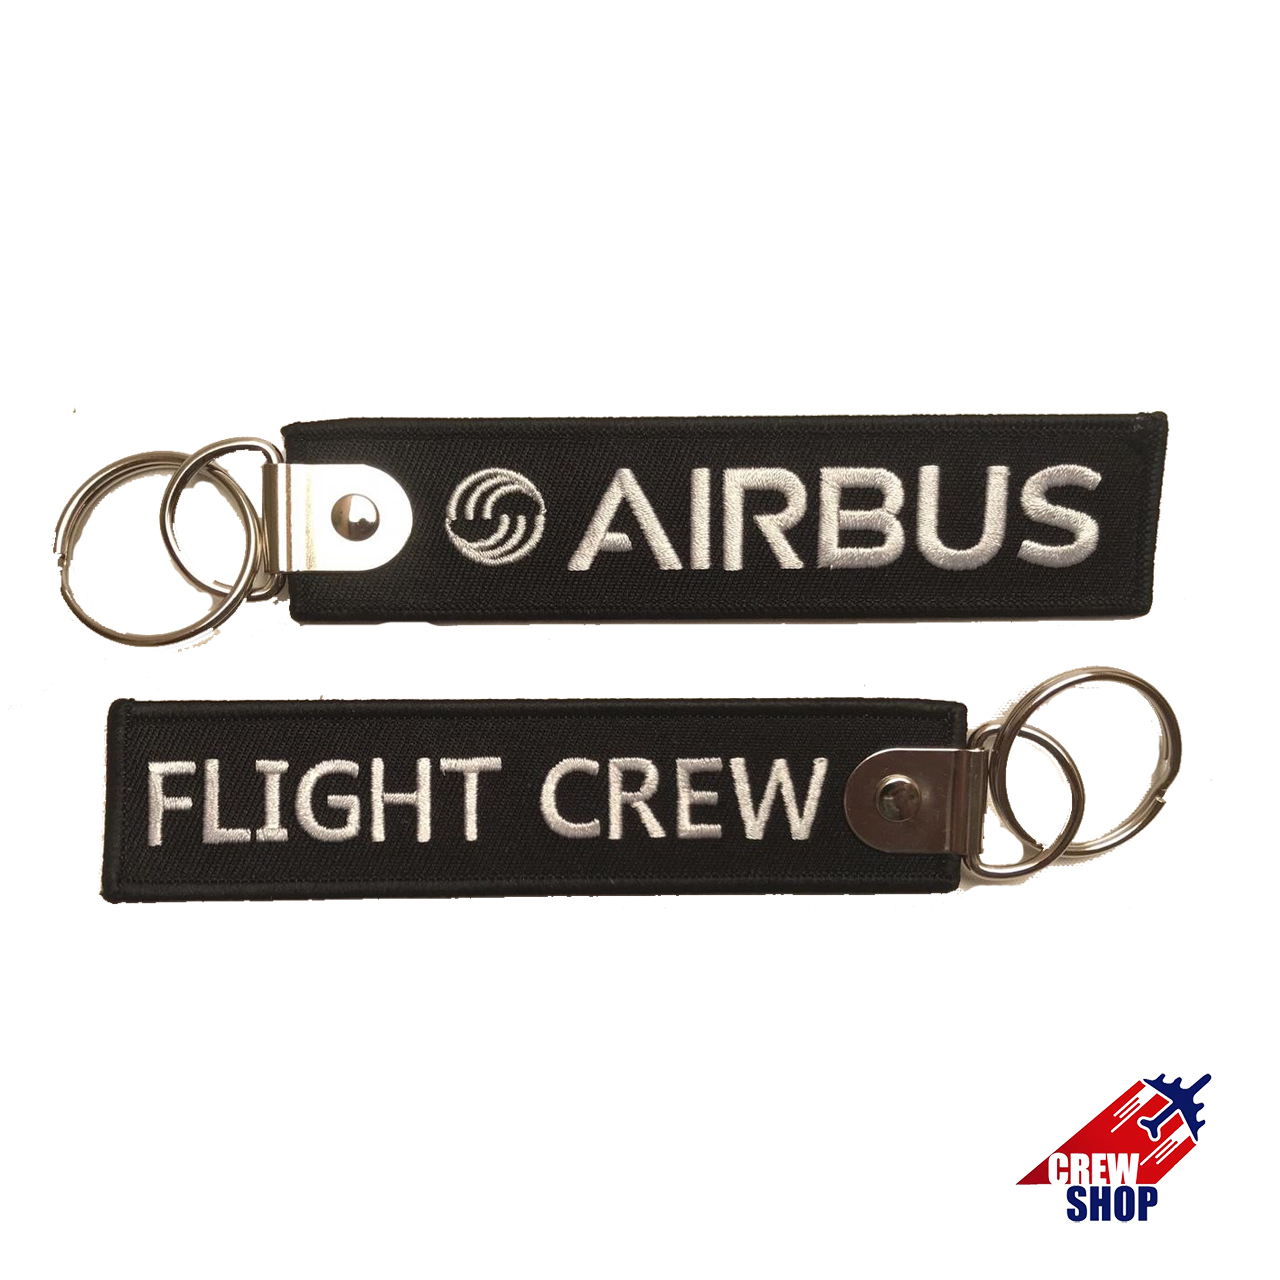 AIRBUS-FLIGHT CREW